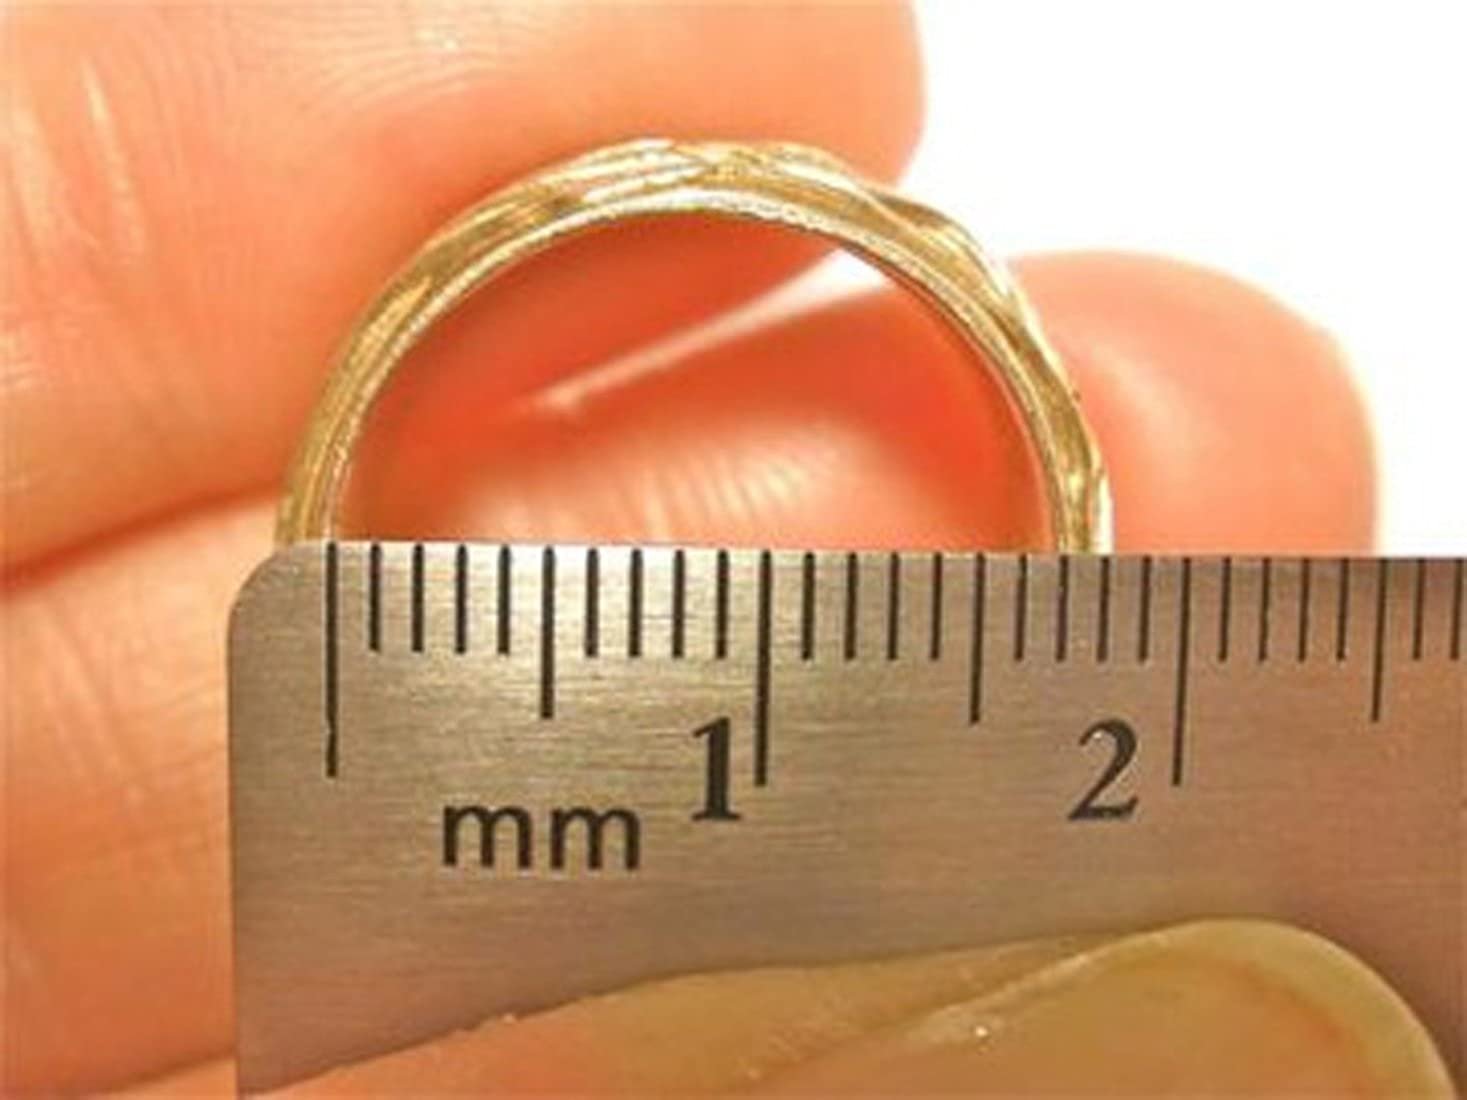 17 см в см2. 16 Размер кольца. Диаметр кольца 18 мм. 20 Мм размер кольца. Диаметр кольца 3 см.